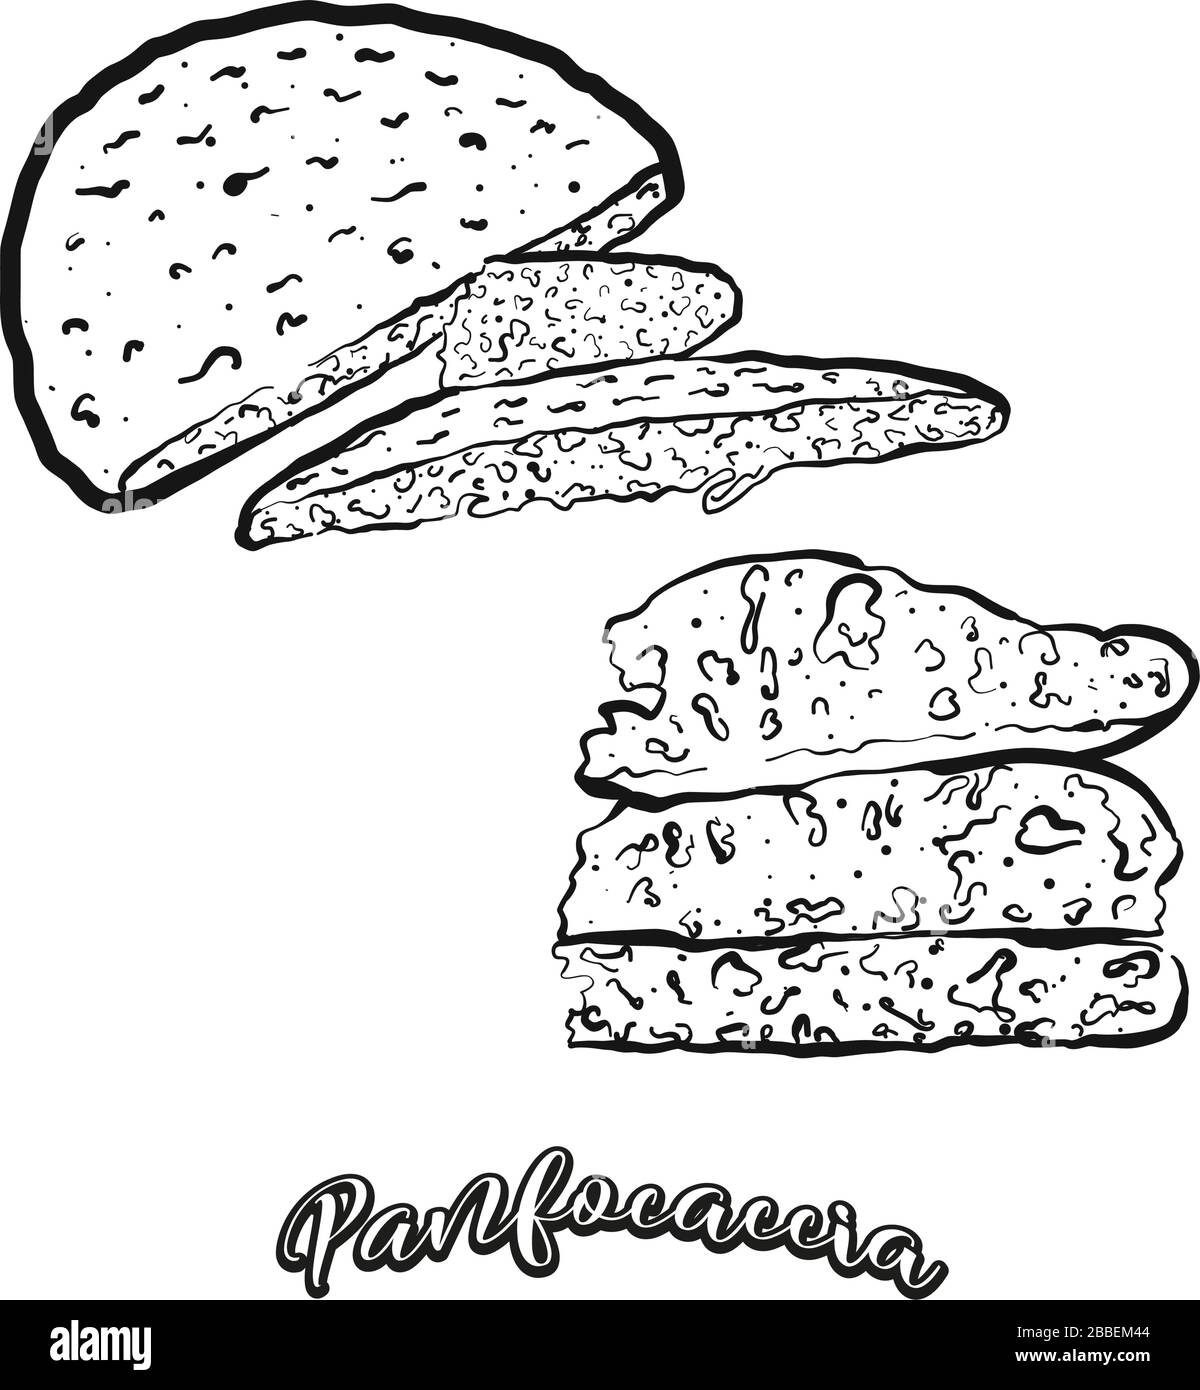 Panfocaccia disegno cibo separato su bianco. Disegno vettoriale di lievitati, di solito noti in Italia. Serie di illustrazioni alimentari. Illustrazione Vettoriale